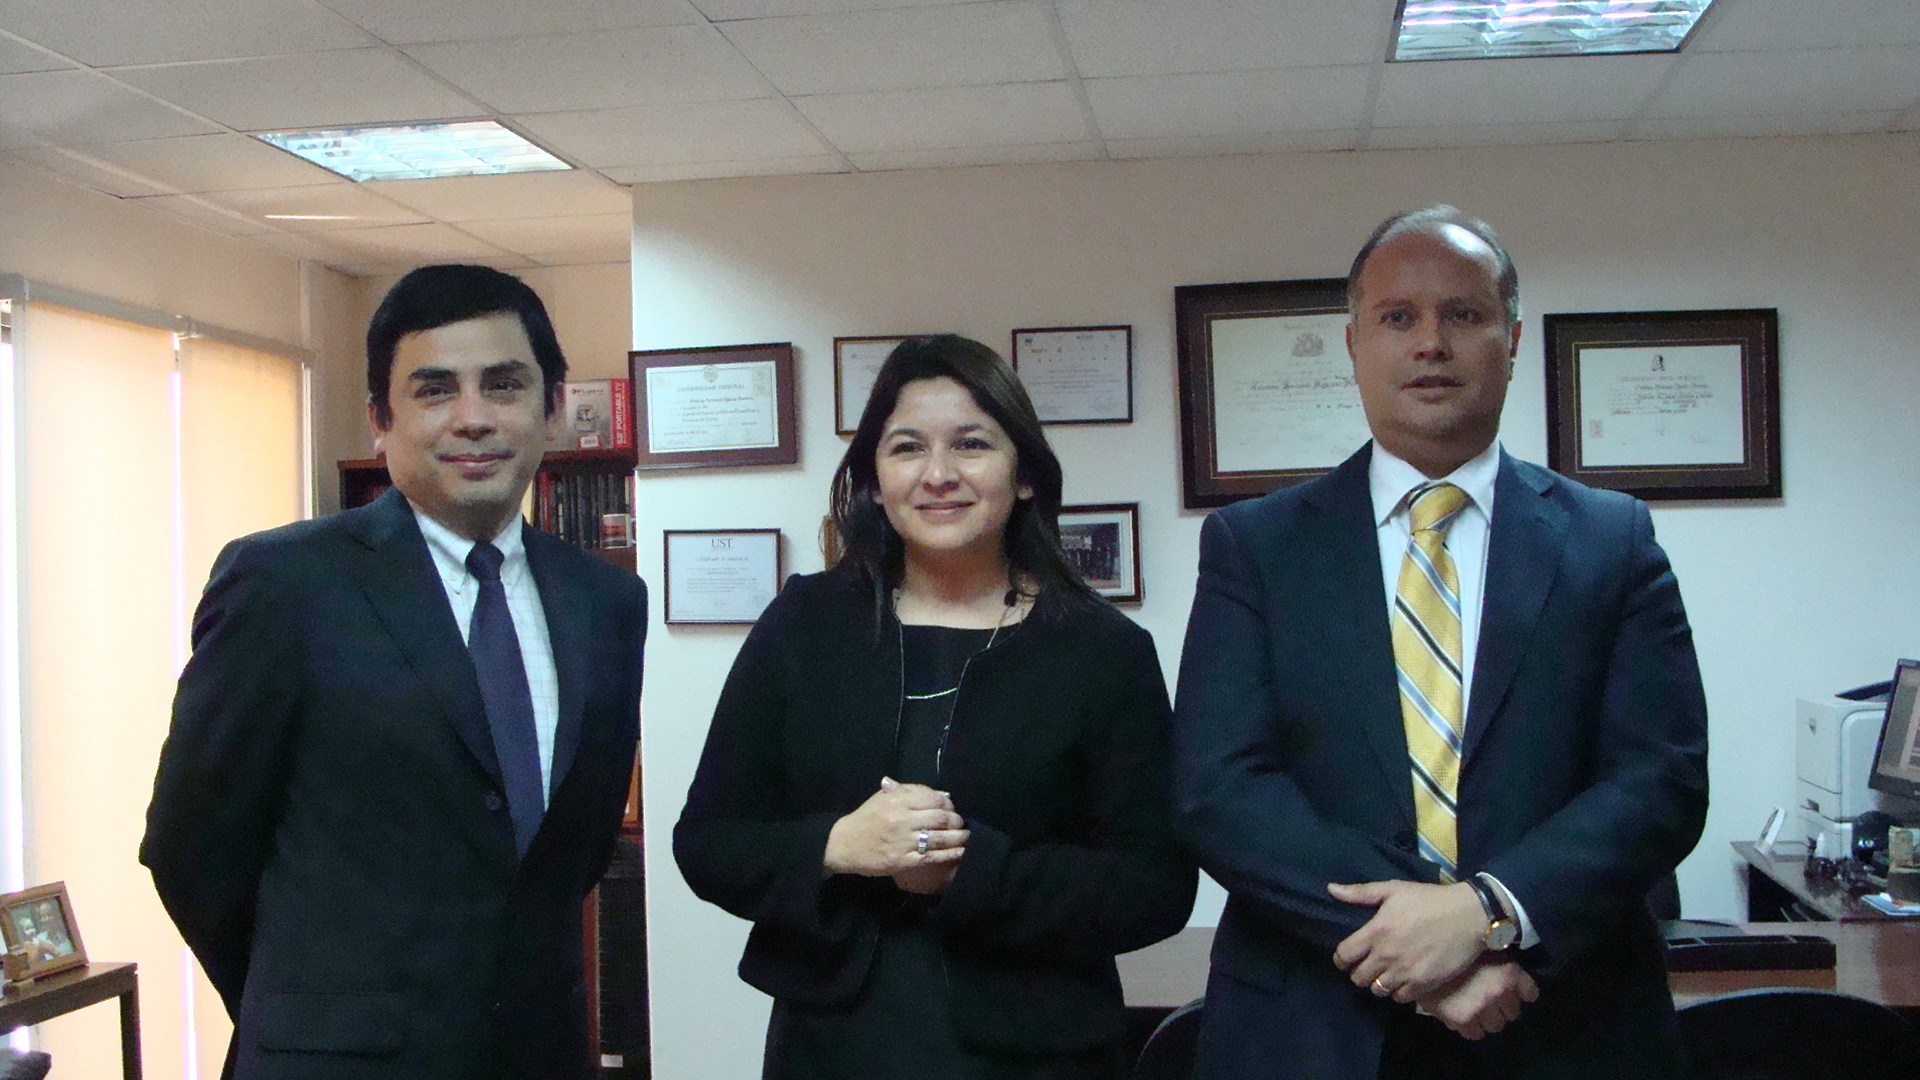 La Defensora Regional de Antofagasta, Loreto Flores, visitó al Fiscal Regional acompañada por el defensor local jefe de la ciudad.